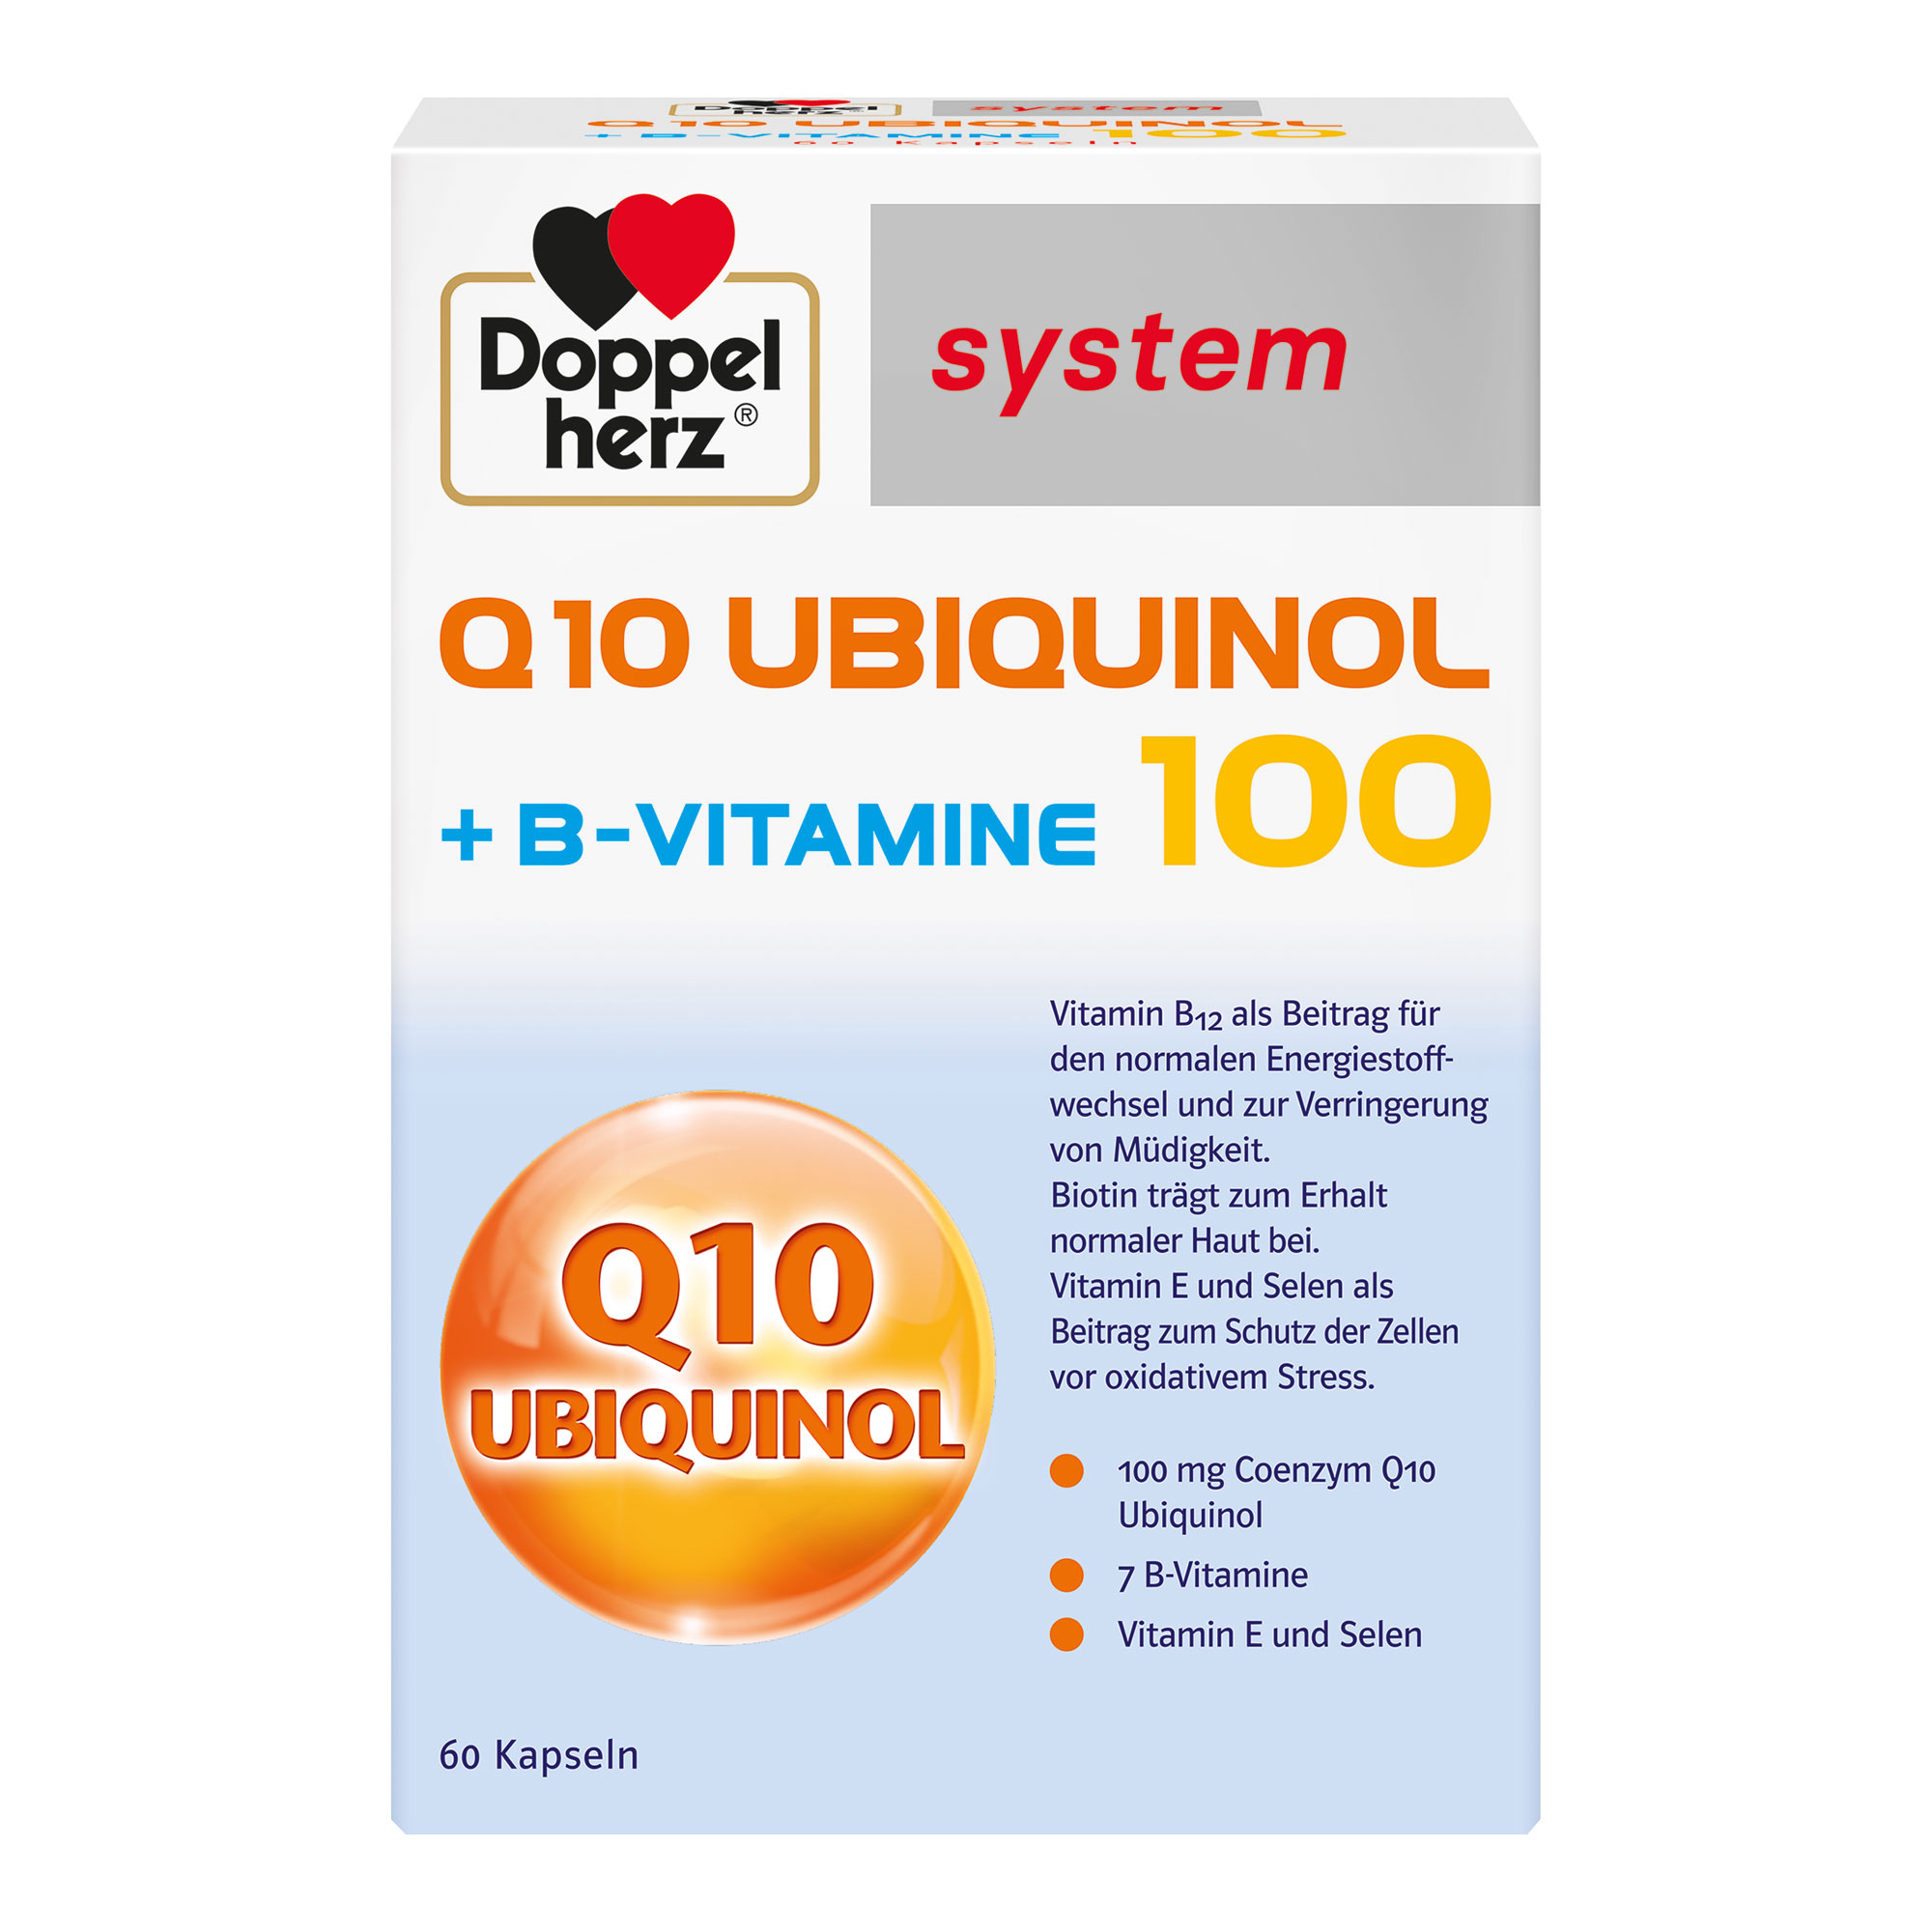 Nahrungsergänzungsmittel mit Coenzym Q10, B-Vitaminen und Vitamin E, Selen.